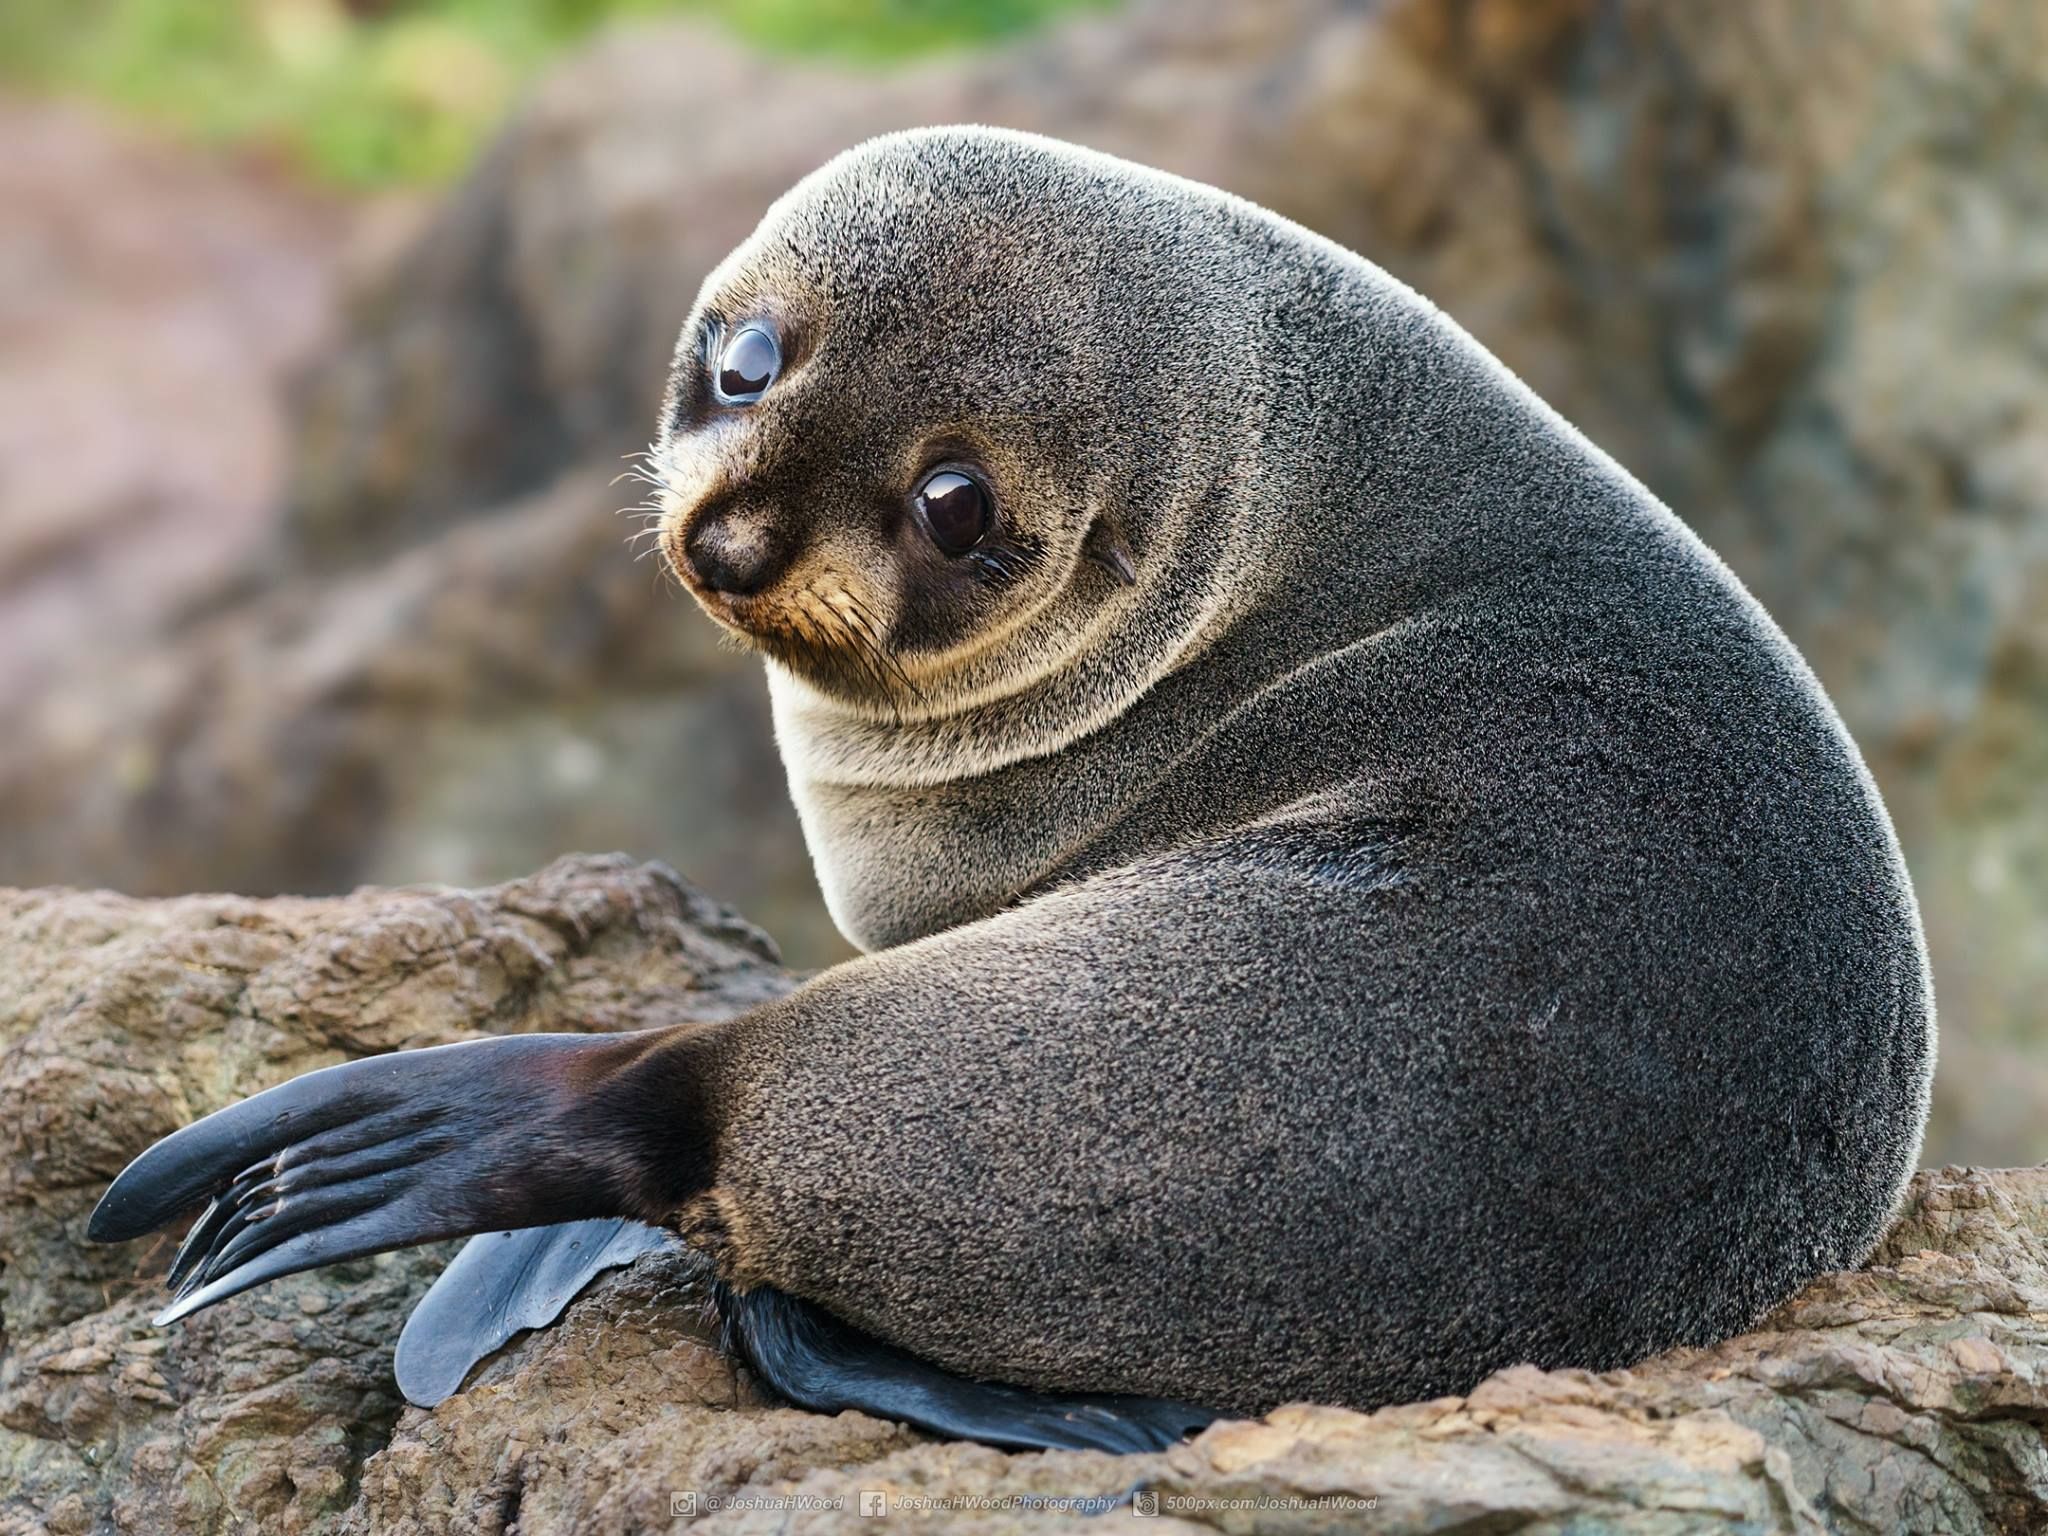 PsBattle: Baby Seal